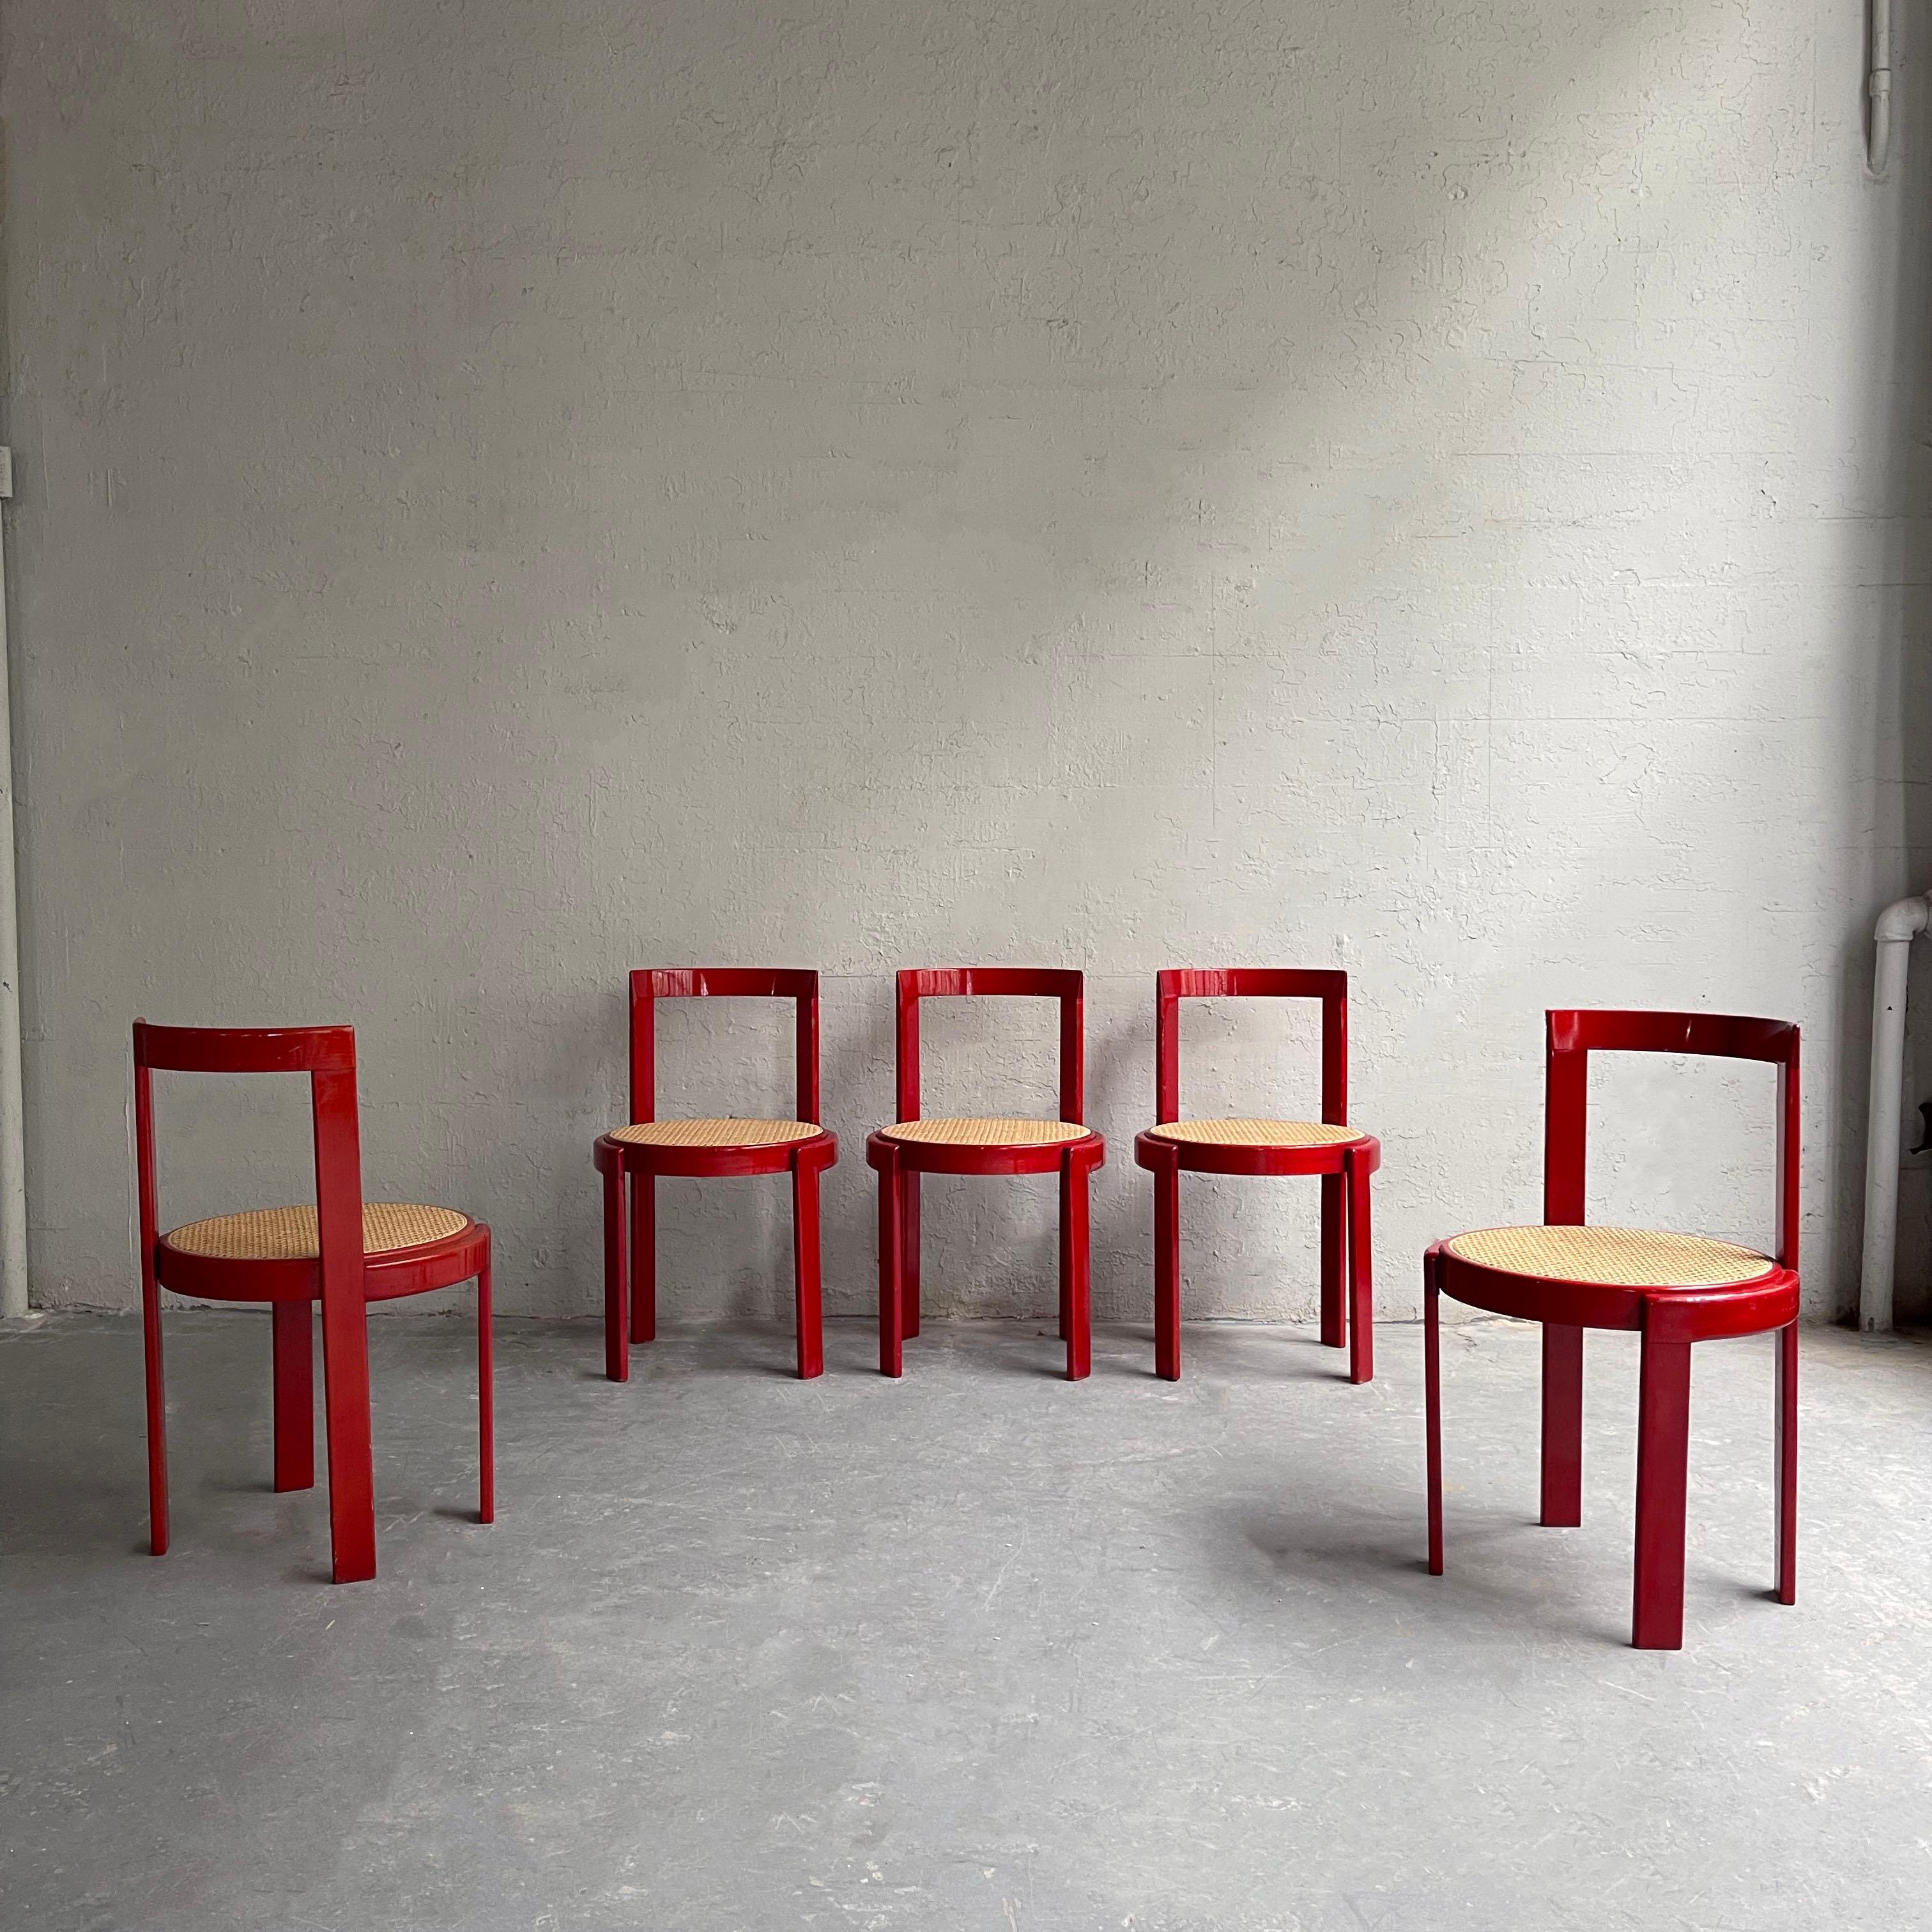 Ensemble de six chaises de salle à manger modernistes italiennes, avec des cadres circulaires en hêtre teinté rouge à lèvres et des sièges cannelés naturels. Il s'agit d'un ensemble de six chaises, dont cinq sont présentées.